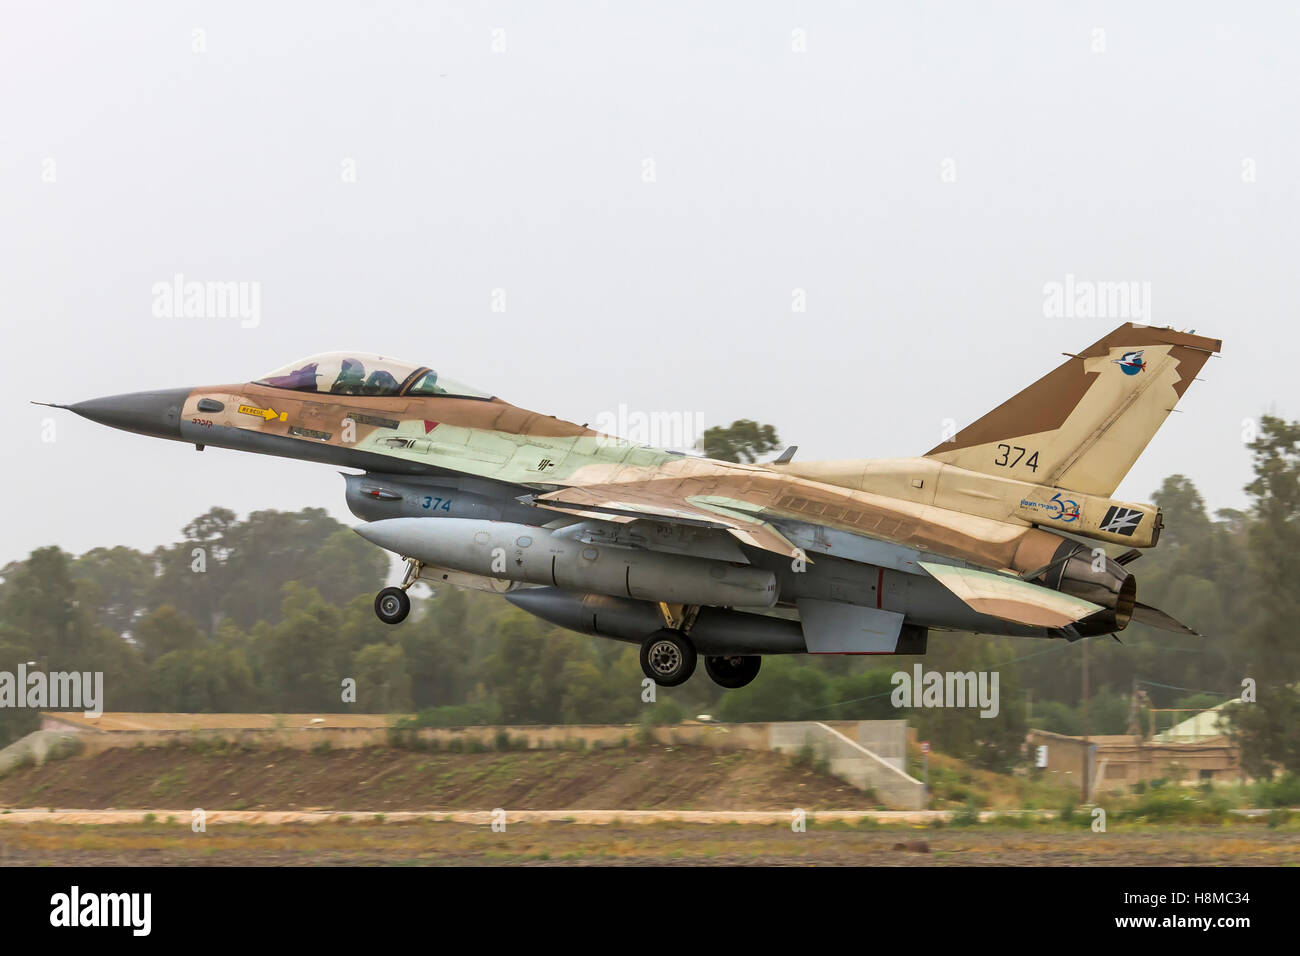 La Fuerza Aérea Israelí (IAF) F-16C (Barak) de aviones de combate en el despegue Foto de stock